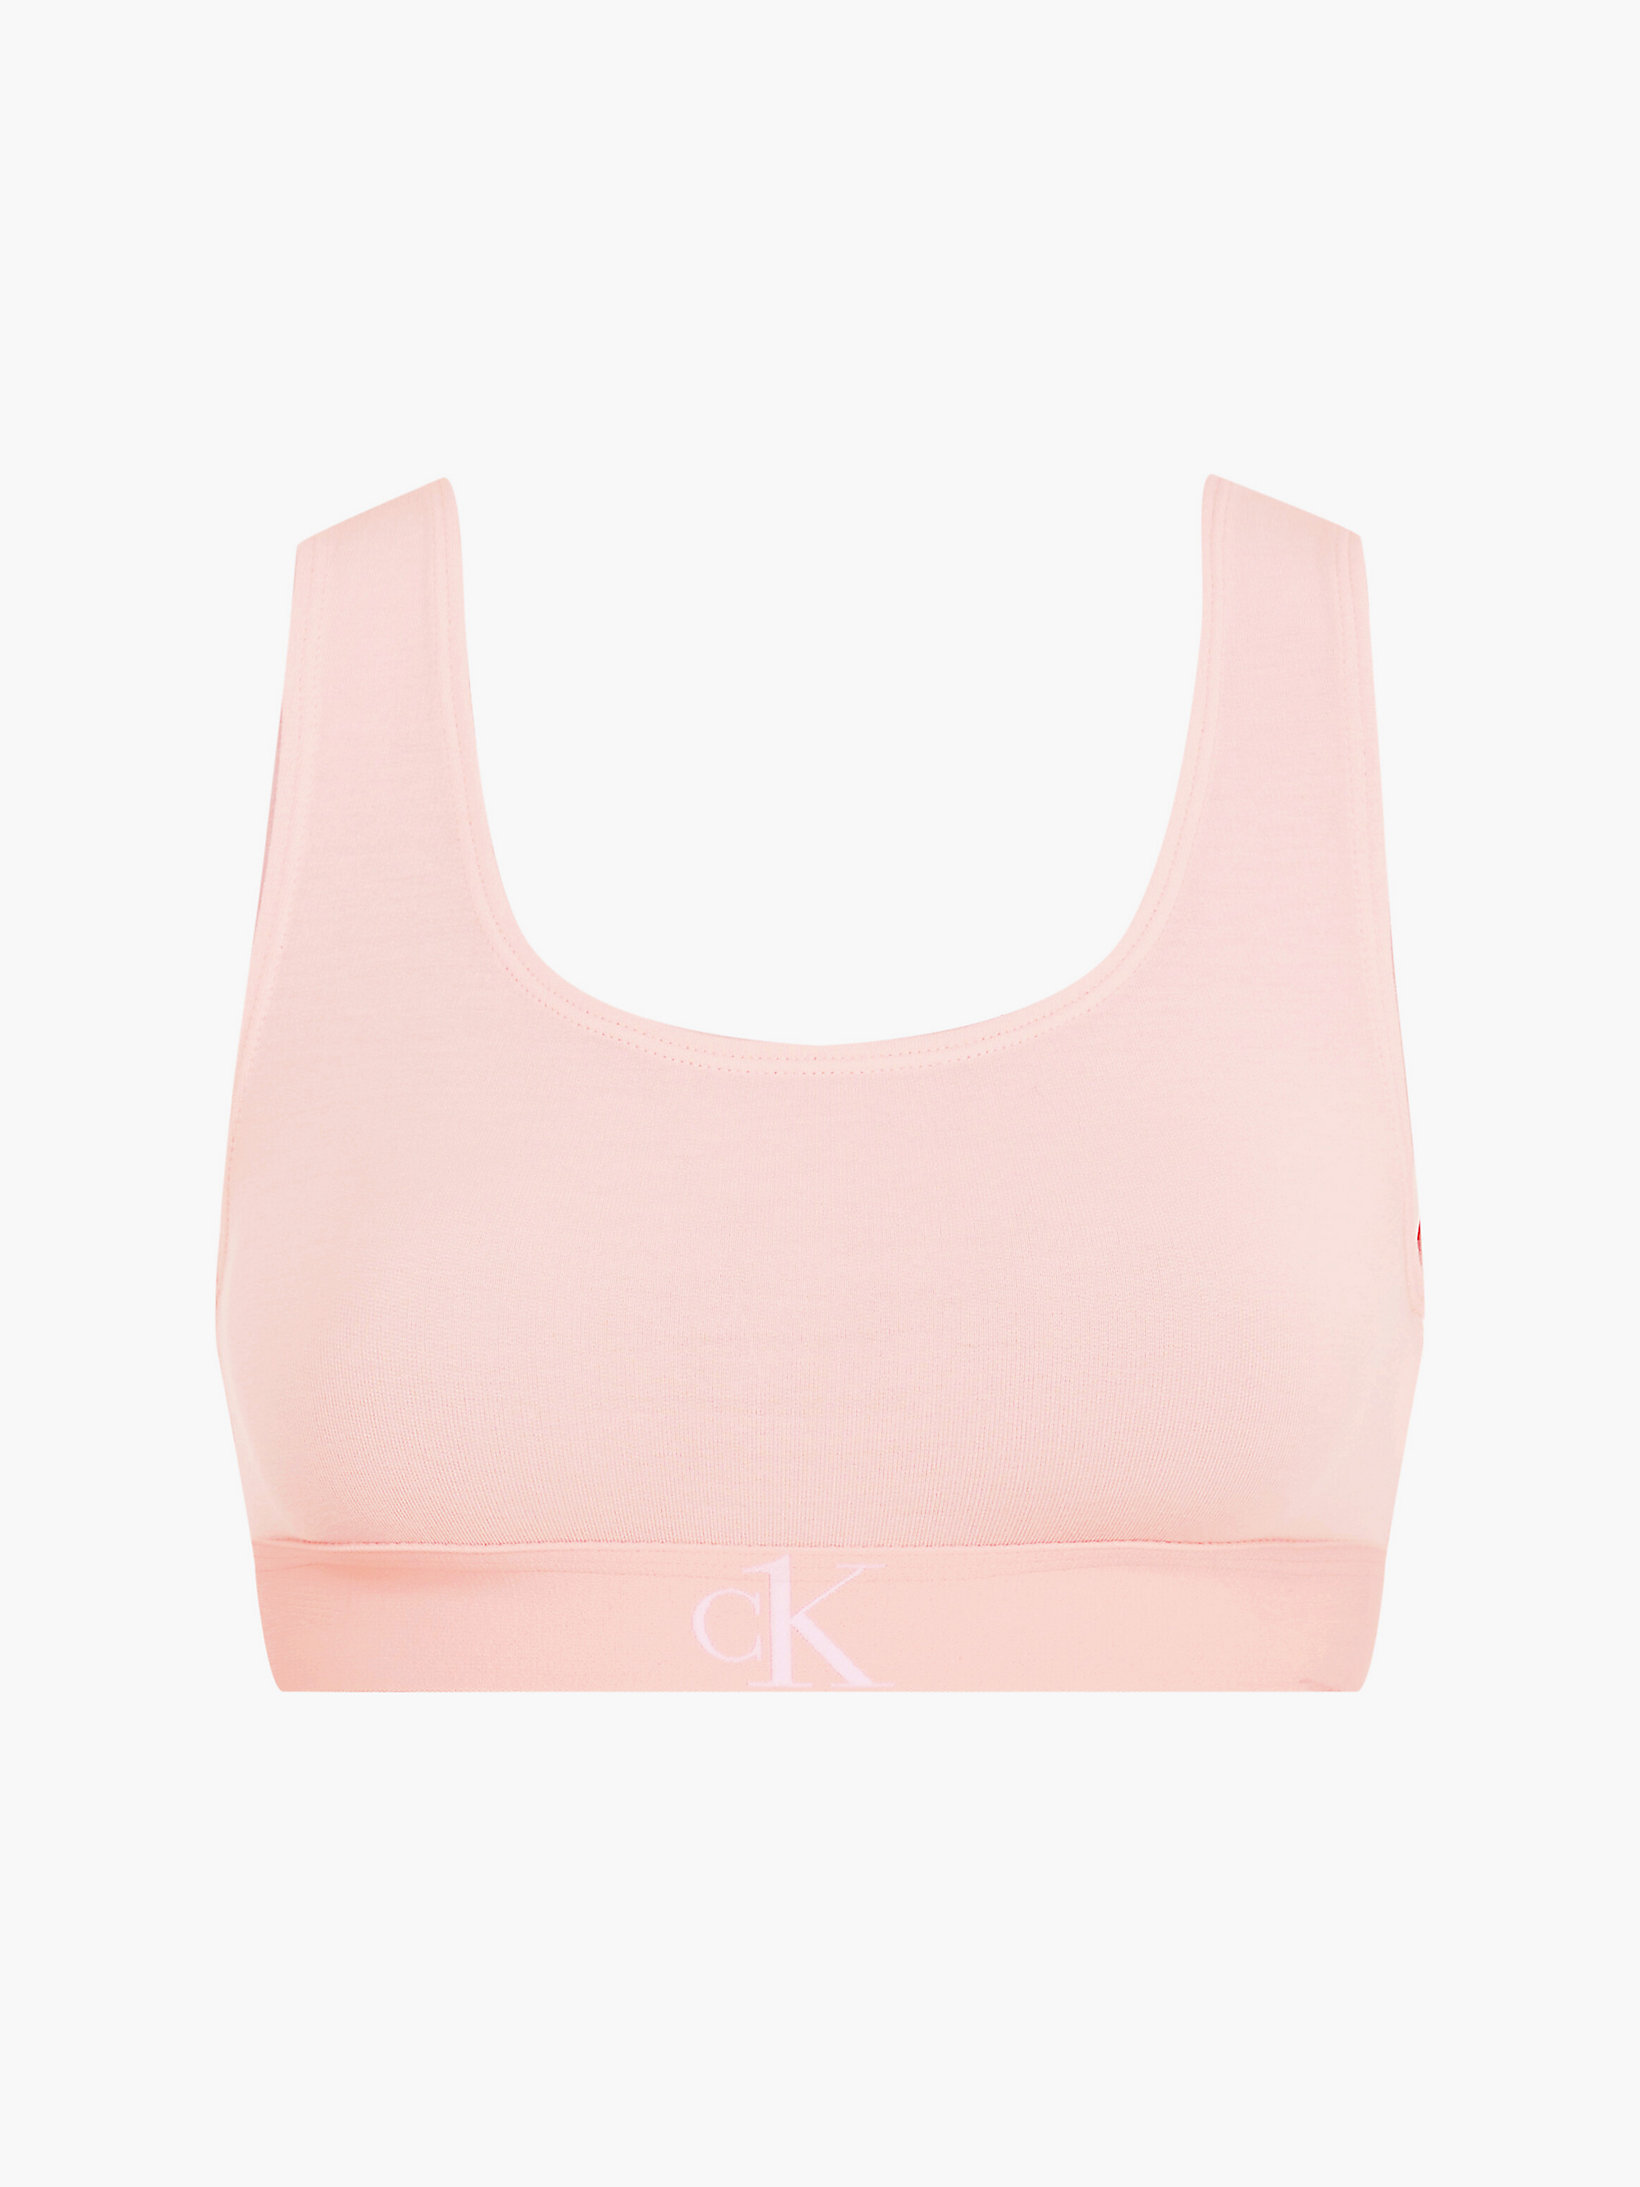 Barely Pink Bralette - CK One undefined women Calvin Klein